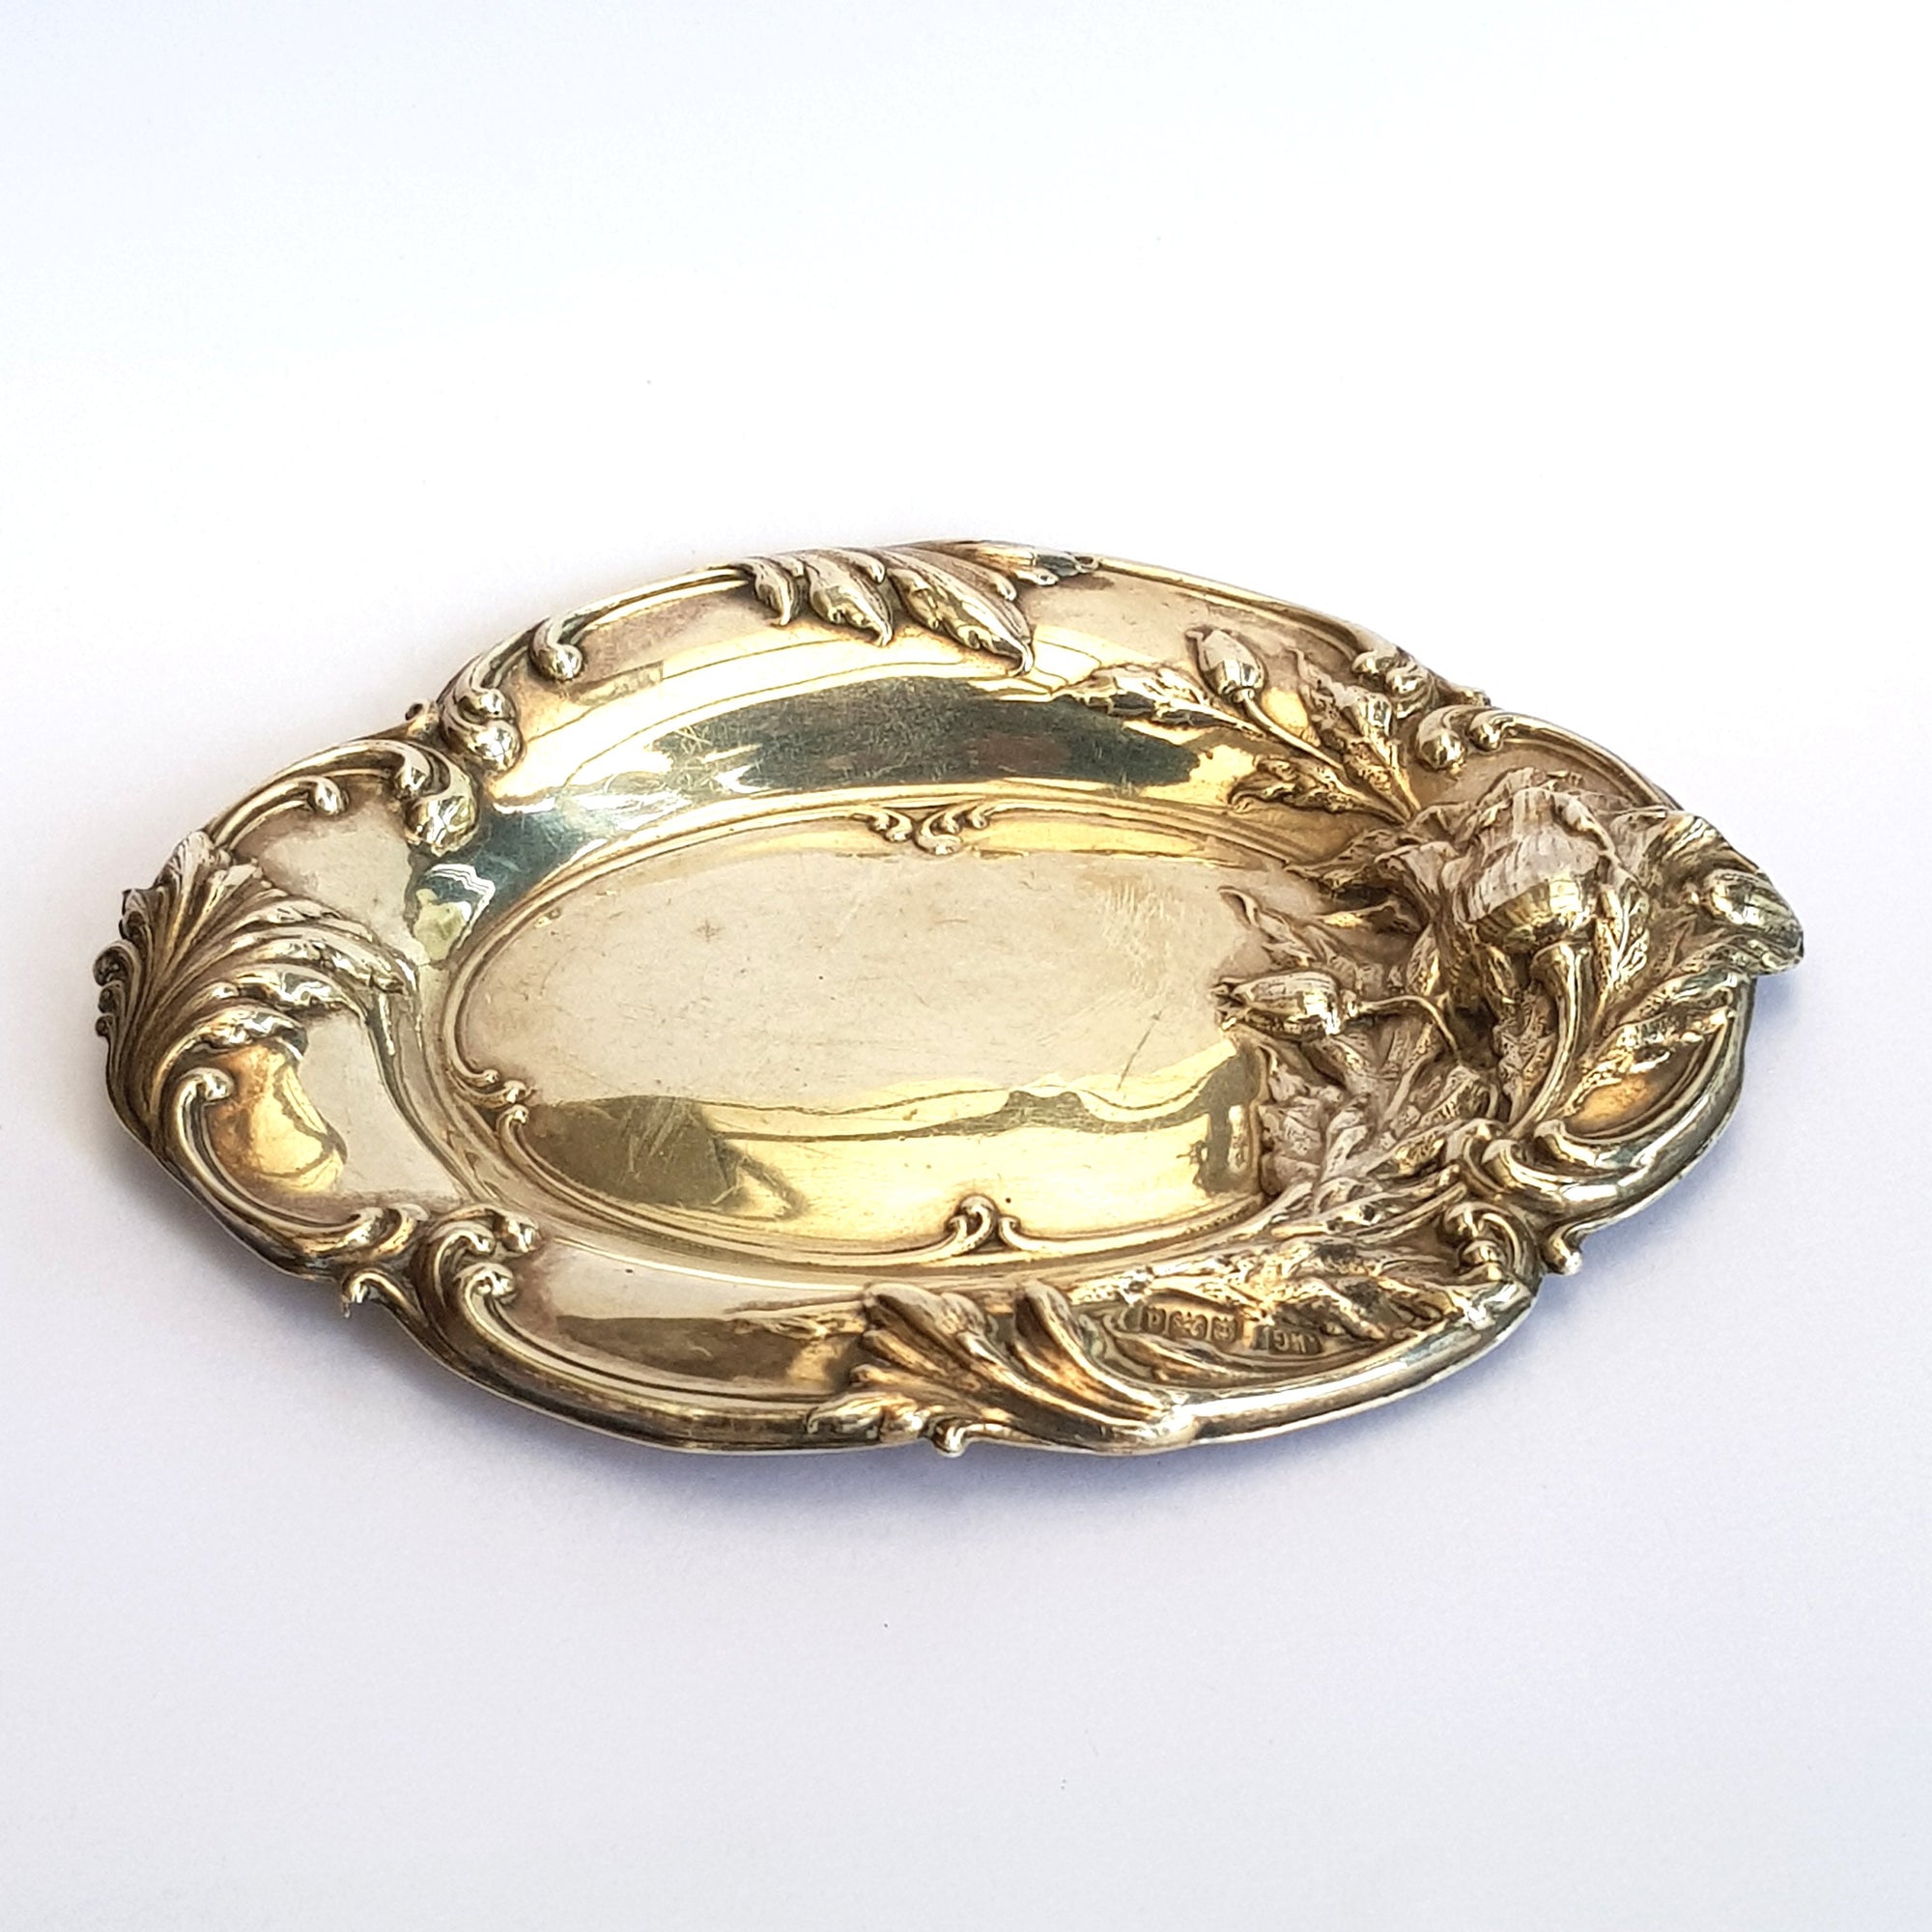 Superb Sterling Silver Floral Repousse Trinket Dish Antique Art Nouveau Birmingham Circa 1903